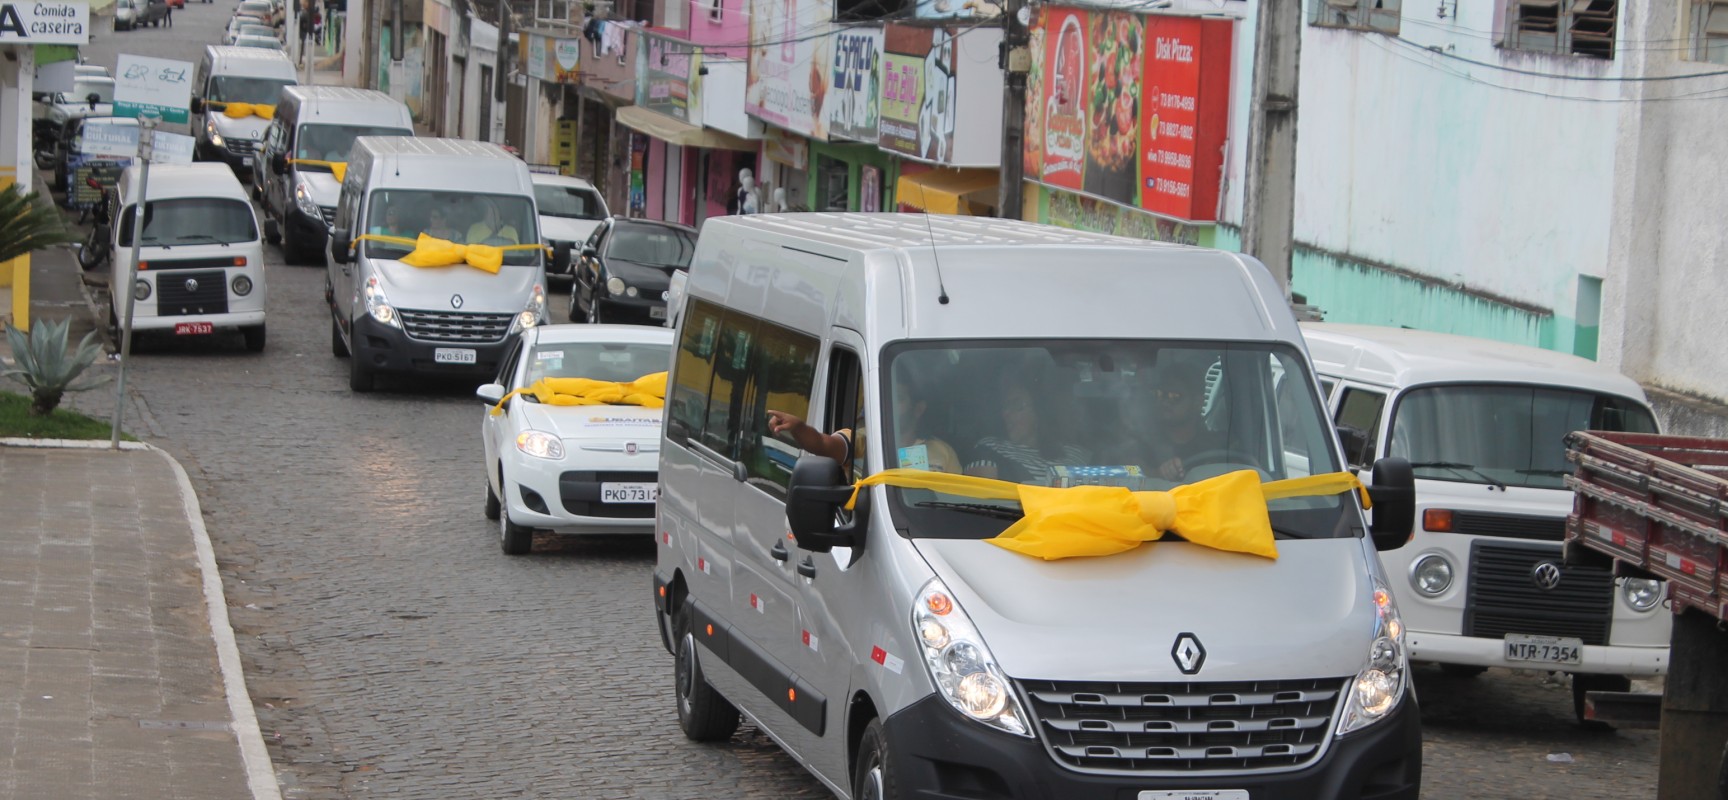 Prefeitura de Ubaitaba adquire 09 veículos zero km e renova frota própria